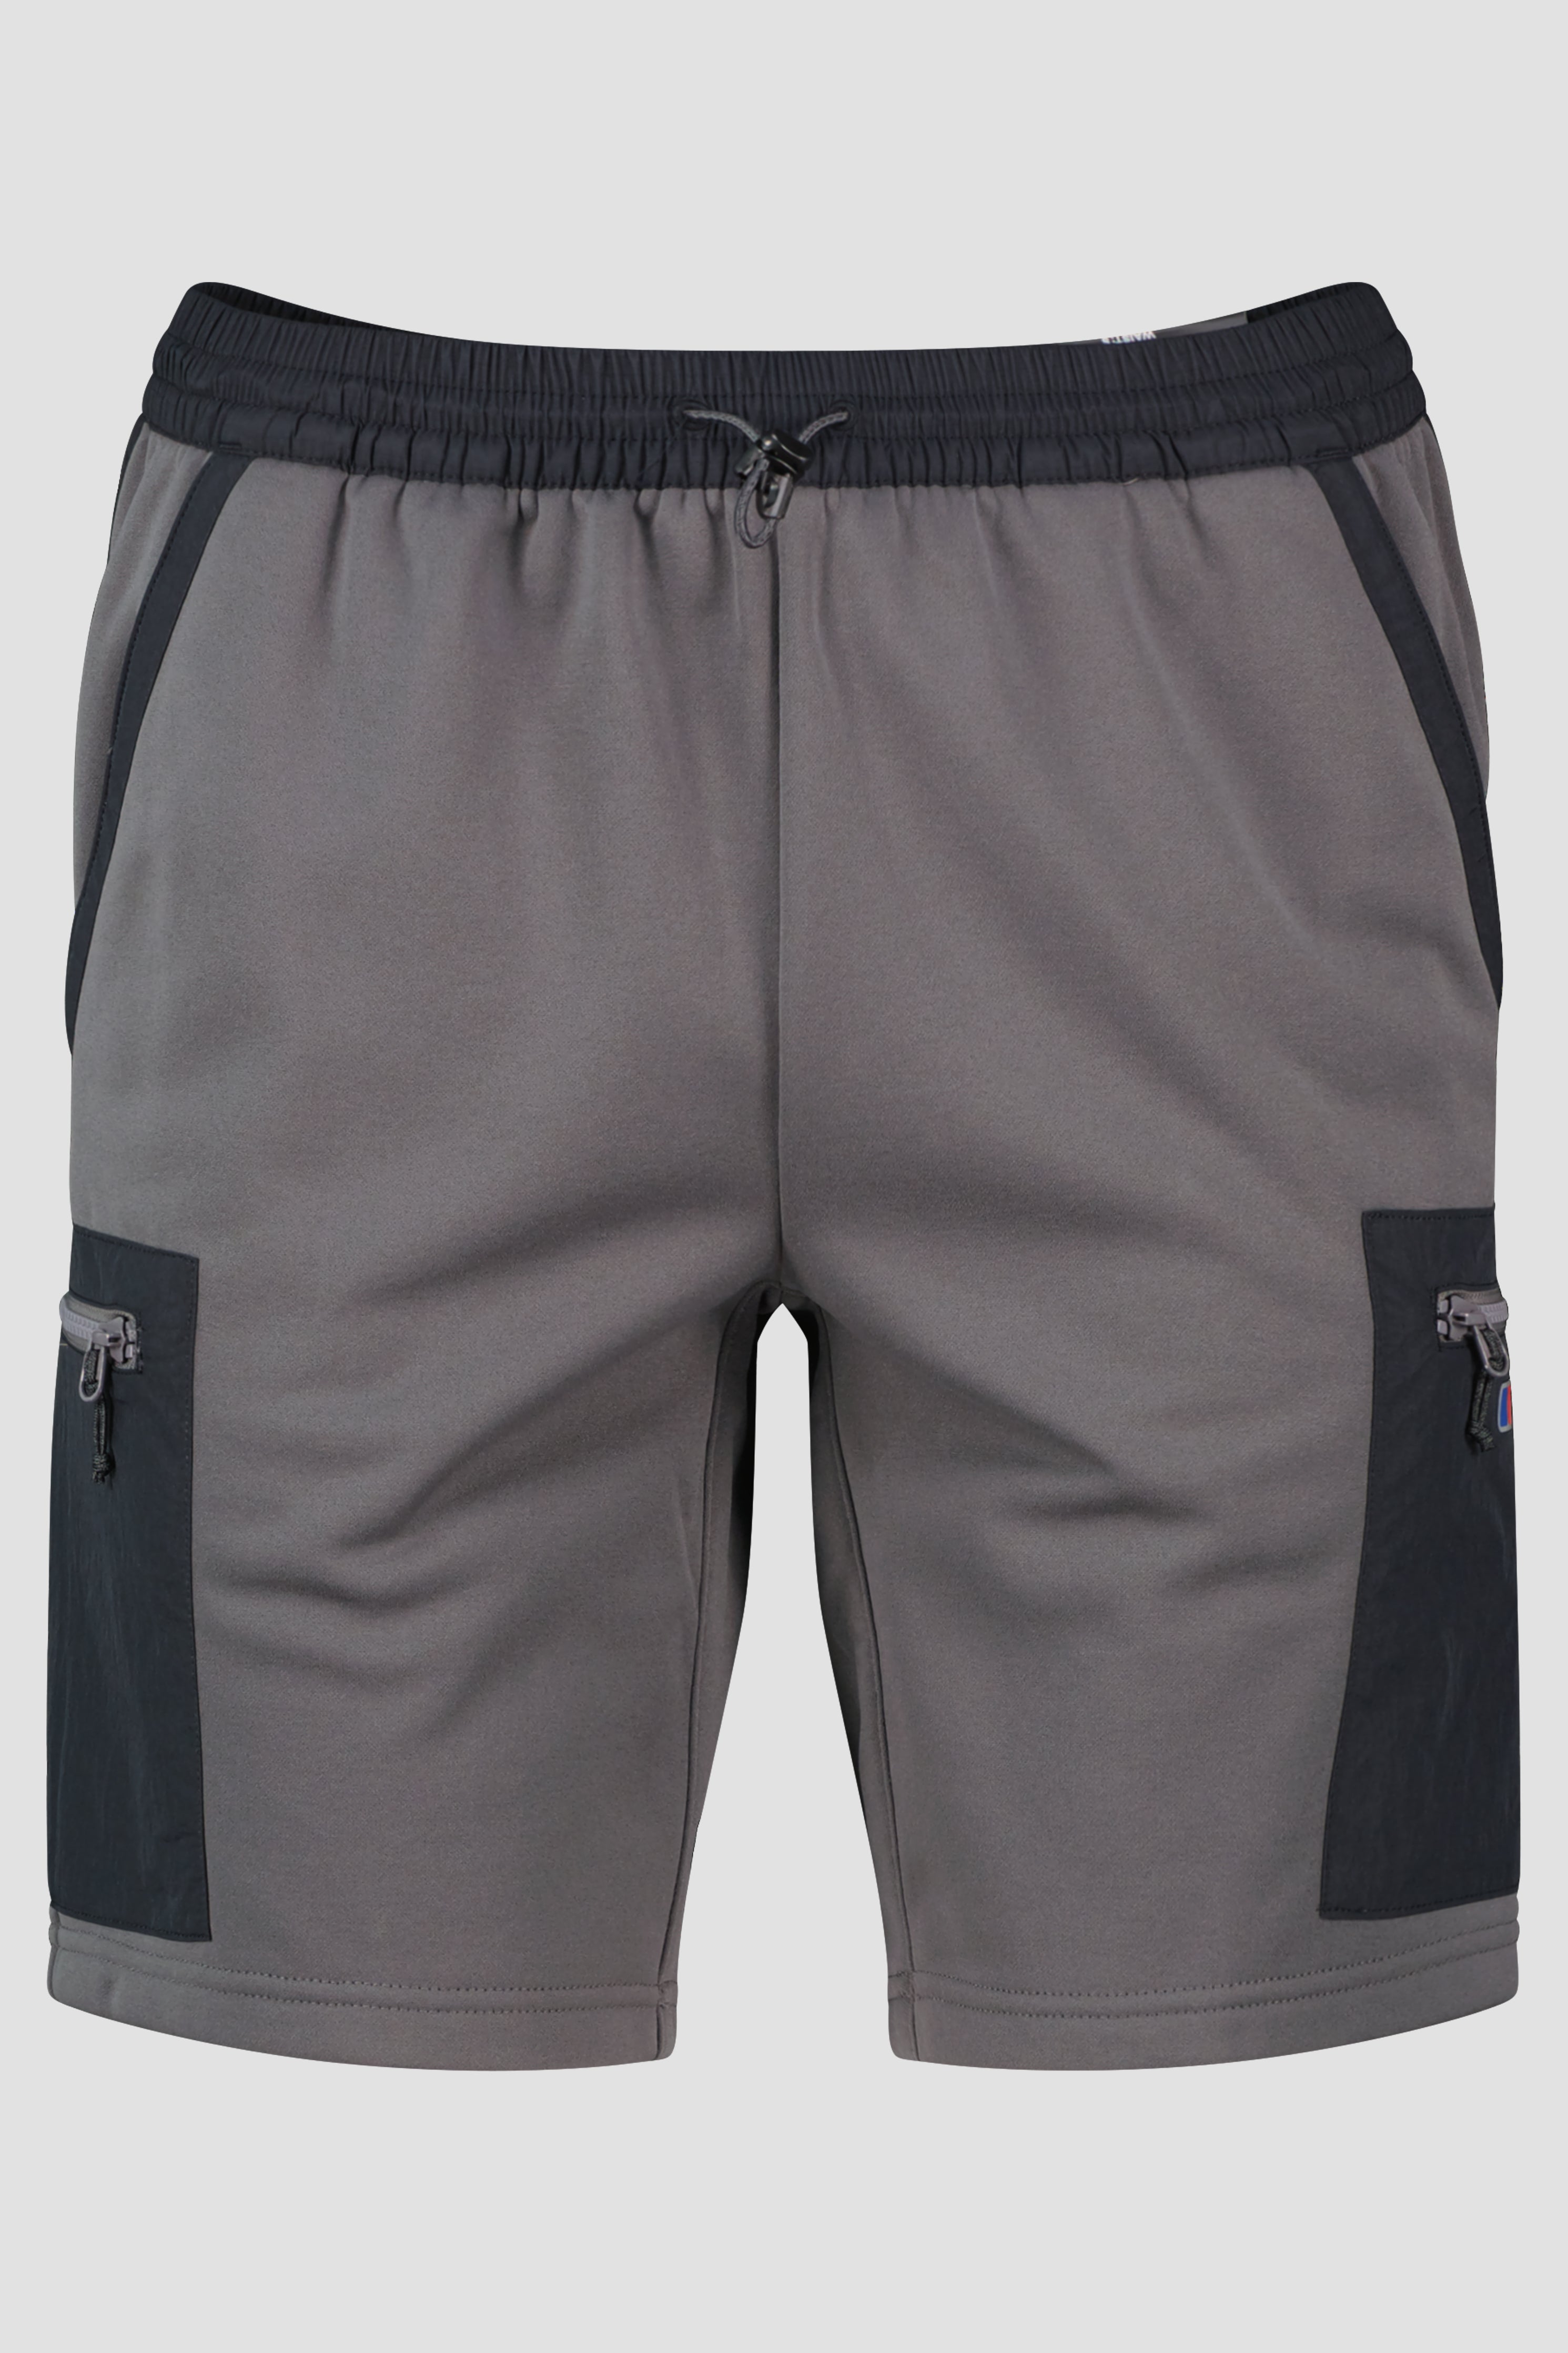 Men's Berghaus Grey Pinstripe Jet Black Reacon Shorts